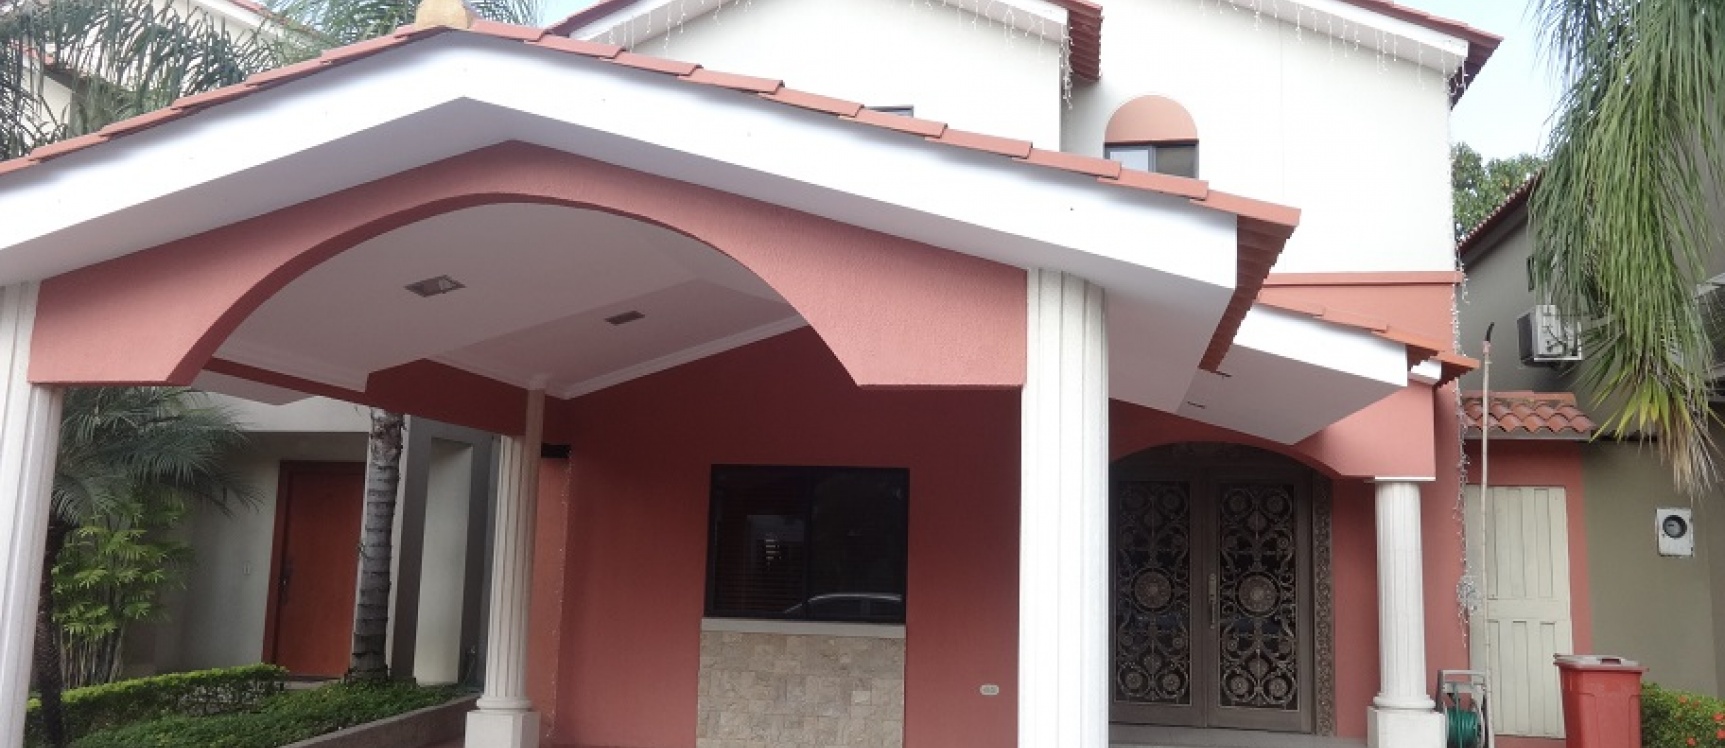 GeoBienes - Samborondon, Casa en alquiler en Ciudad Celeste, AMOBLADA - Plusvalia Guayaquil Casas de venta y alquiler Inmobiliaria Ecuador